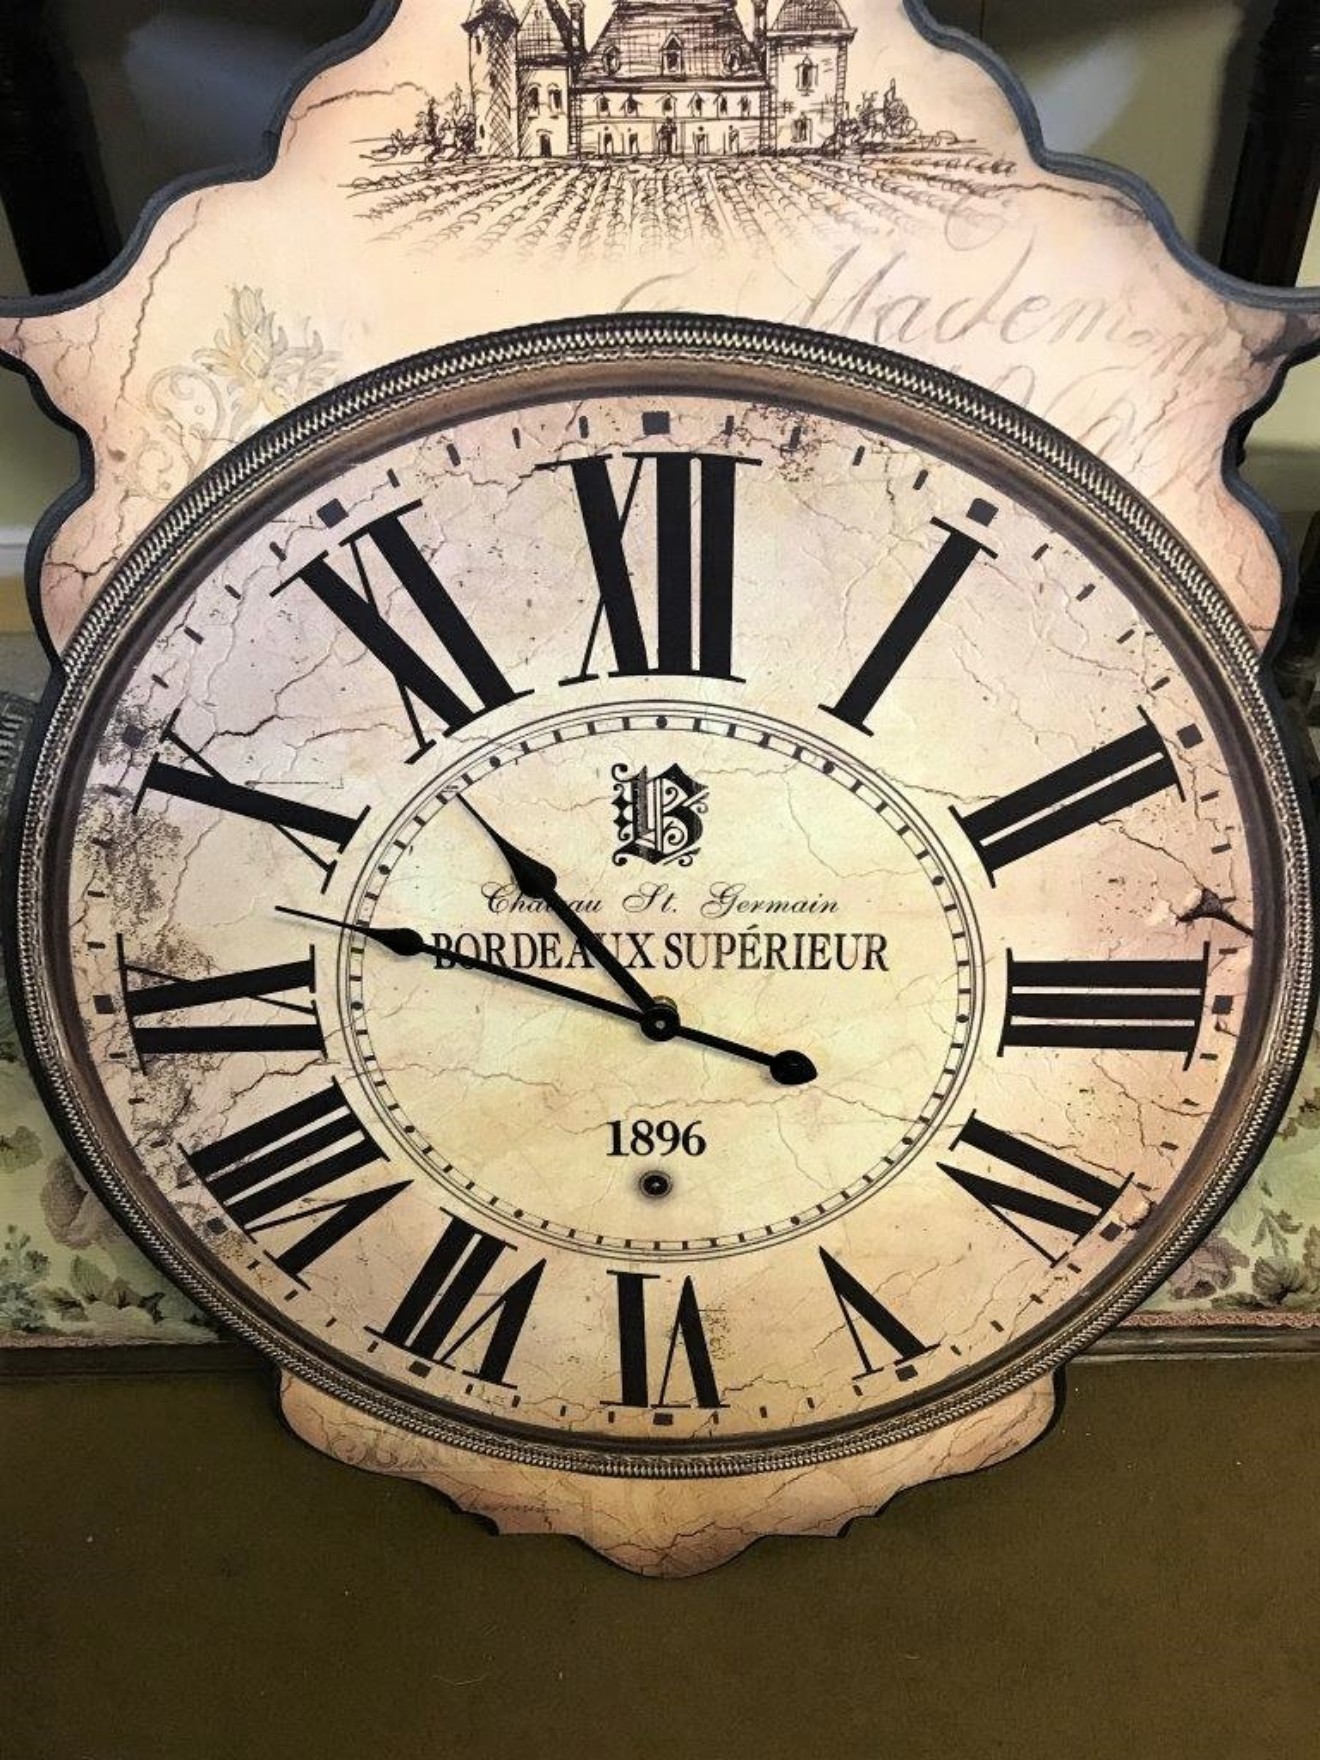 Bordeaux Superieur Wall Clock